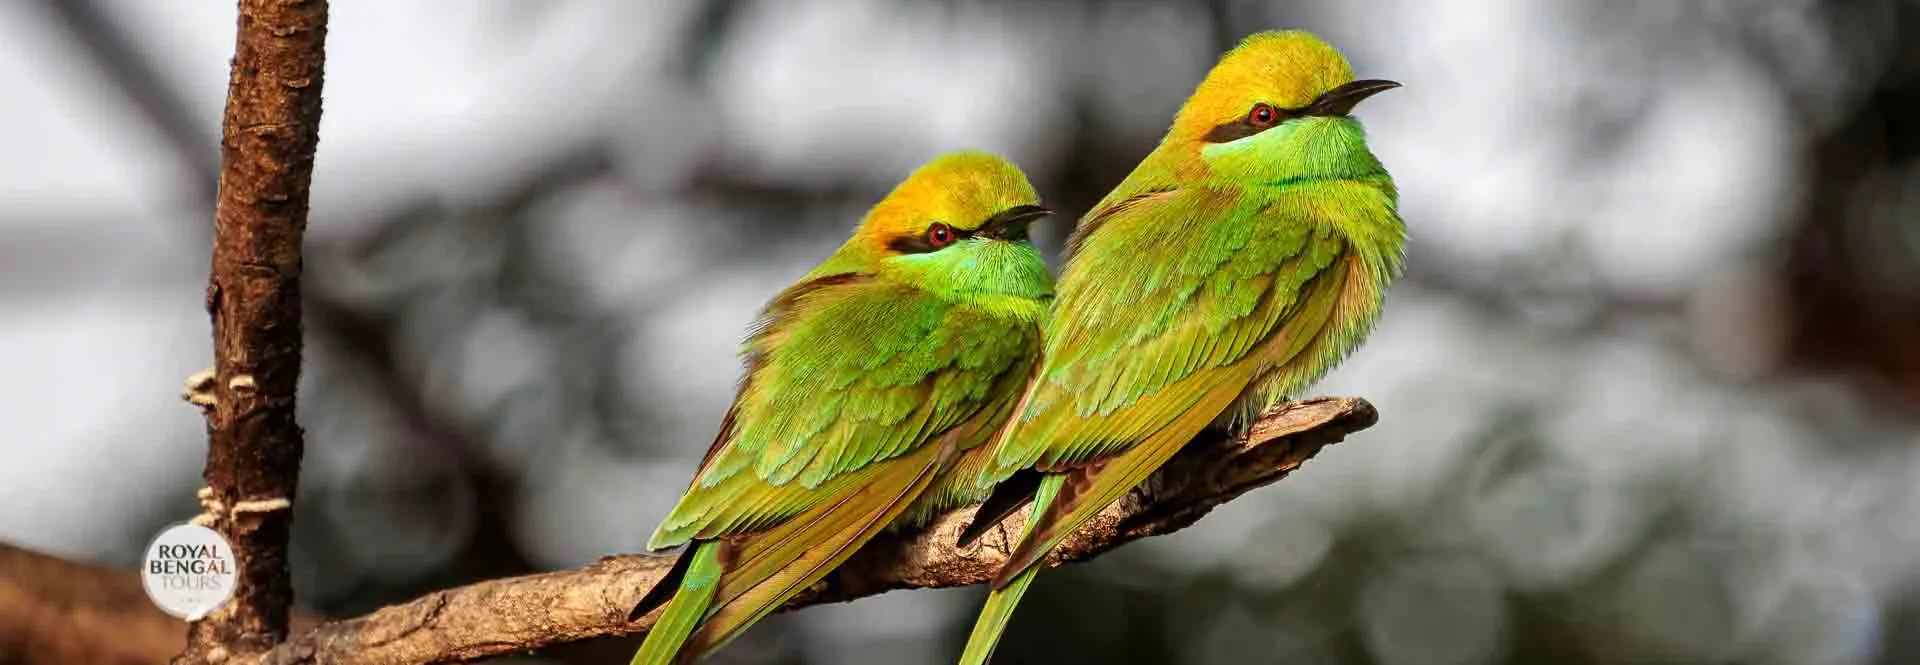 Bird-Watching Trip to Bangladesh